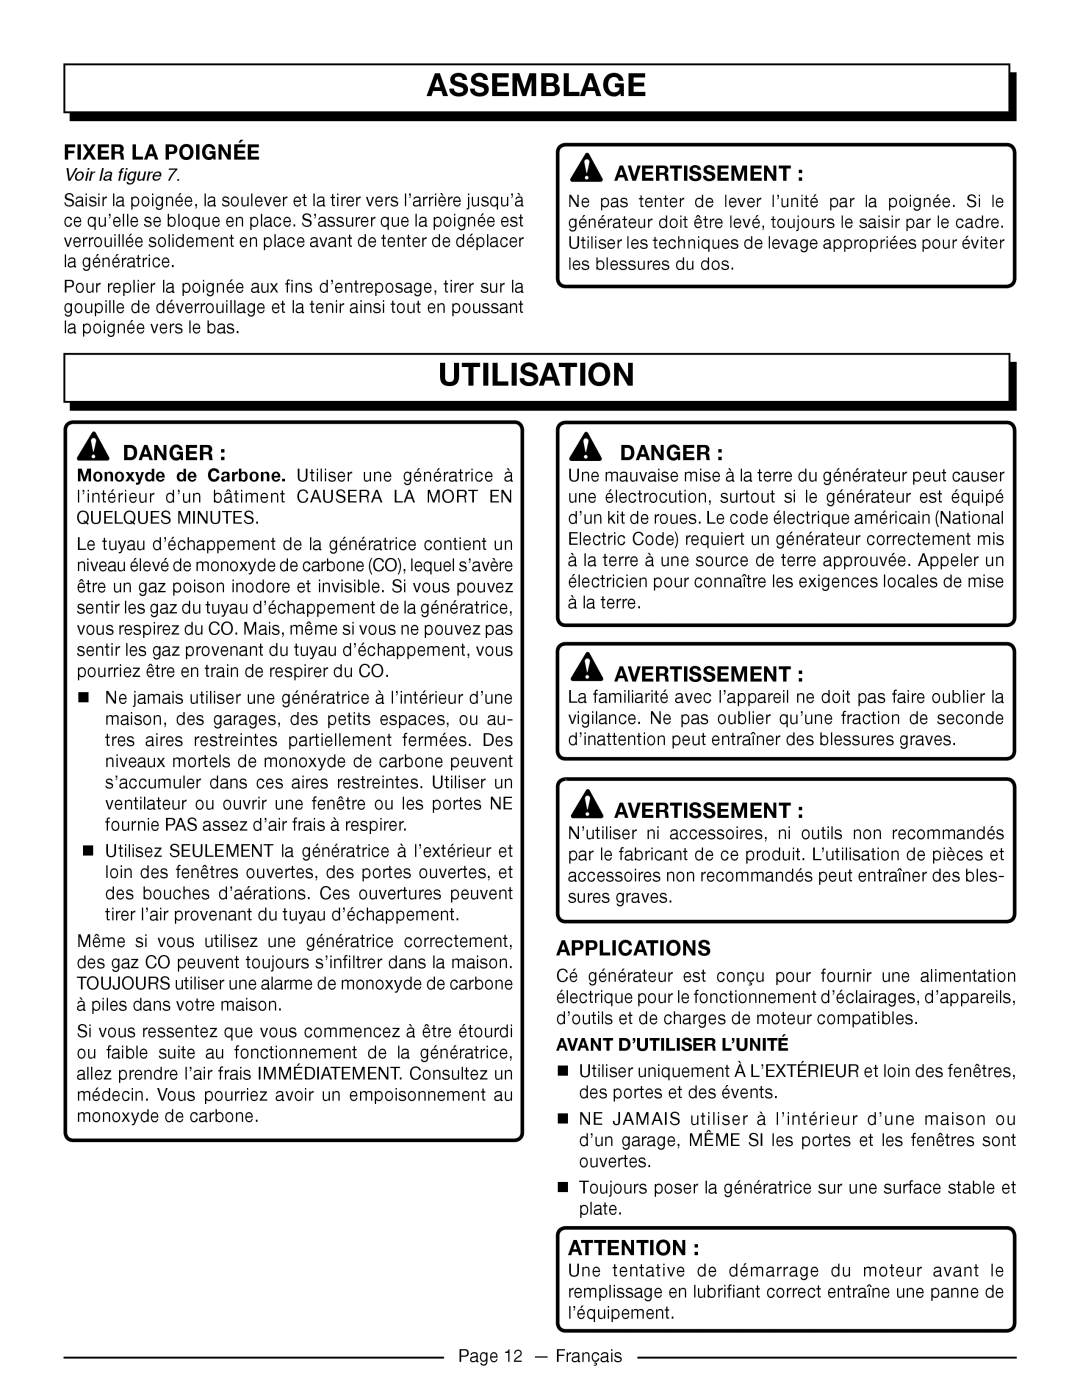 Homelite UT905011 Utilisation, Fixer La Poignée, Avant D’Utiliser L’Unité, Assemblage, Avertissement, Danger, Applications 